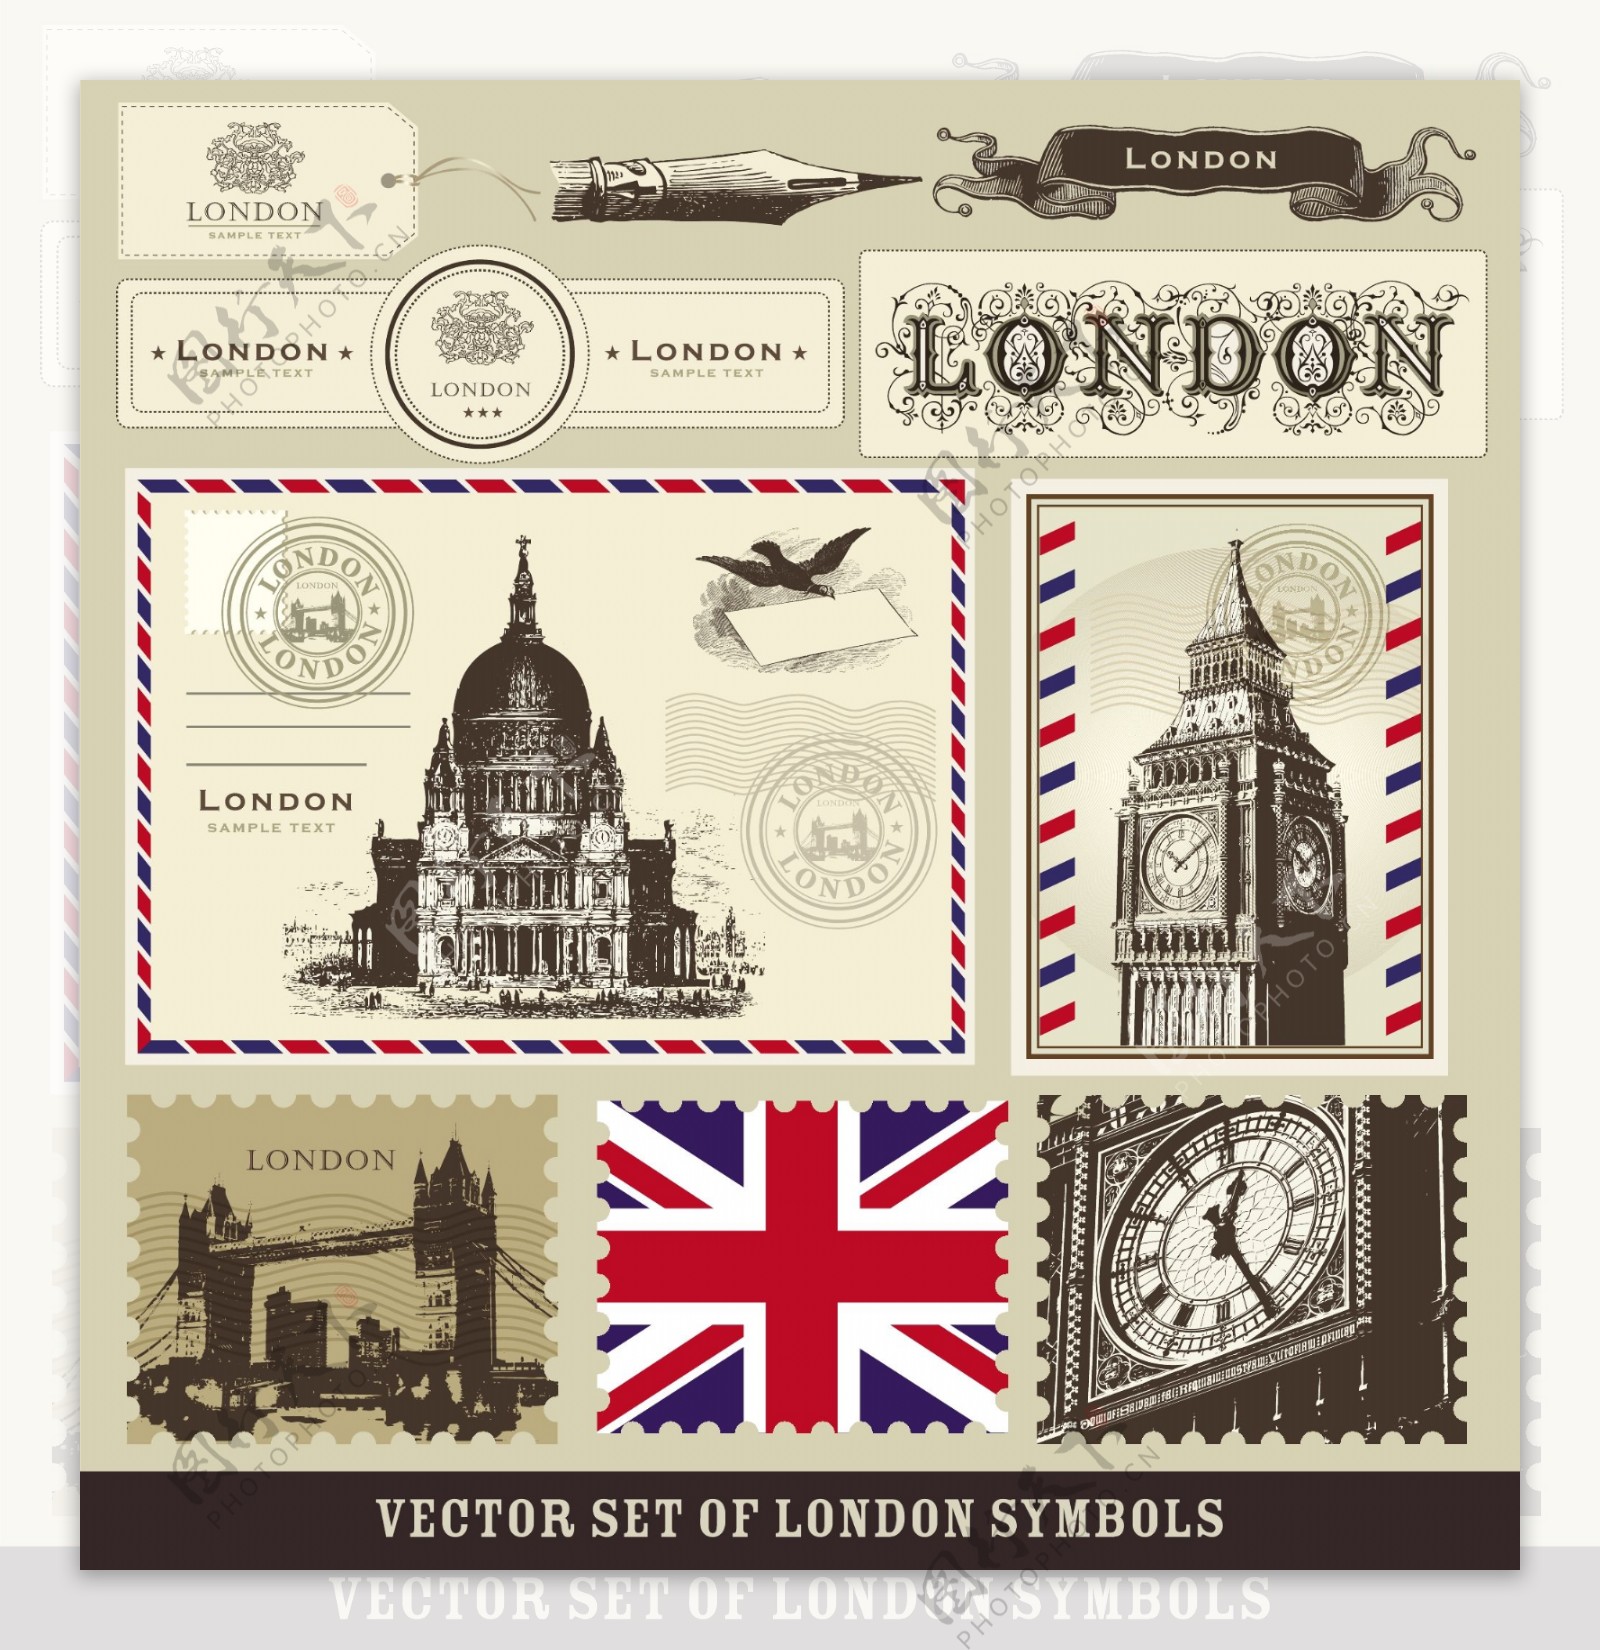 在伦敦和巴黎的象征邮票02矢量素材